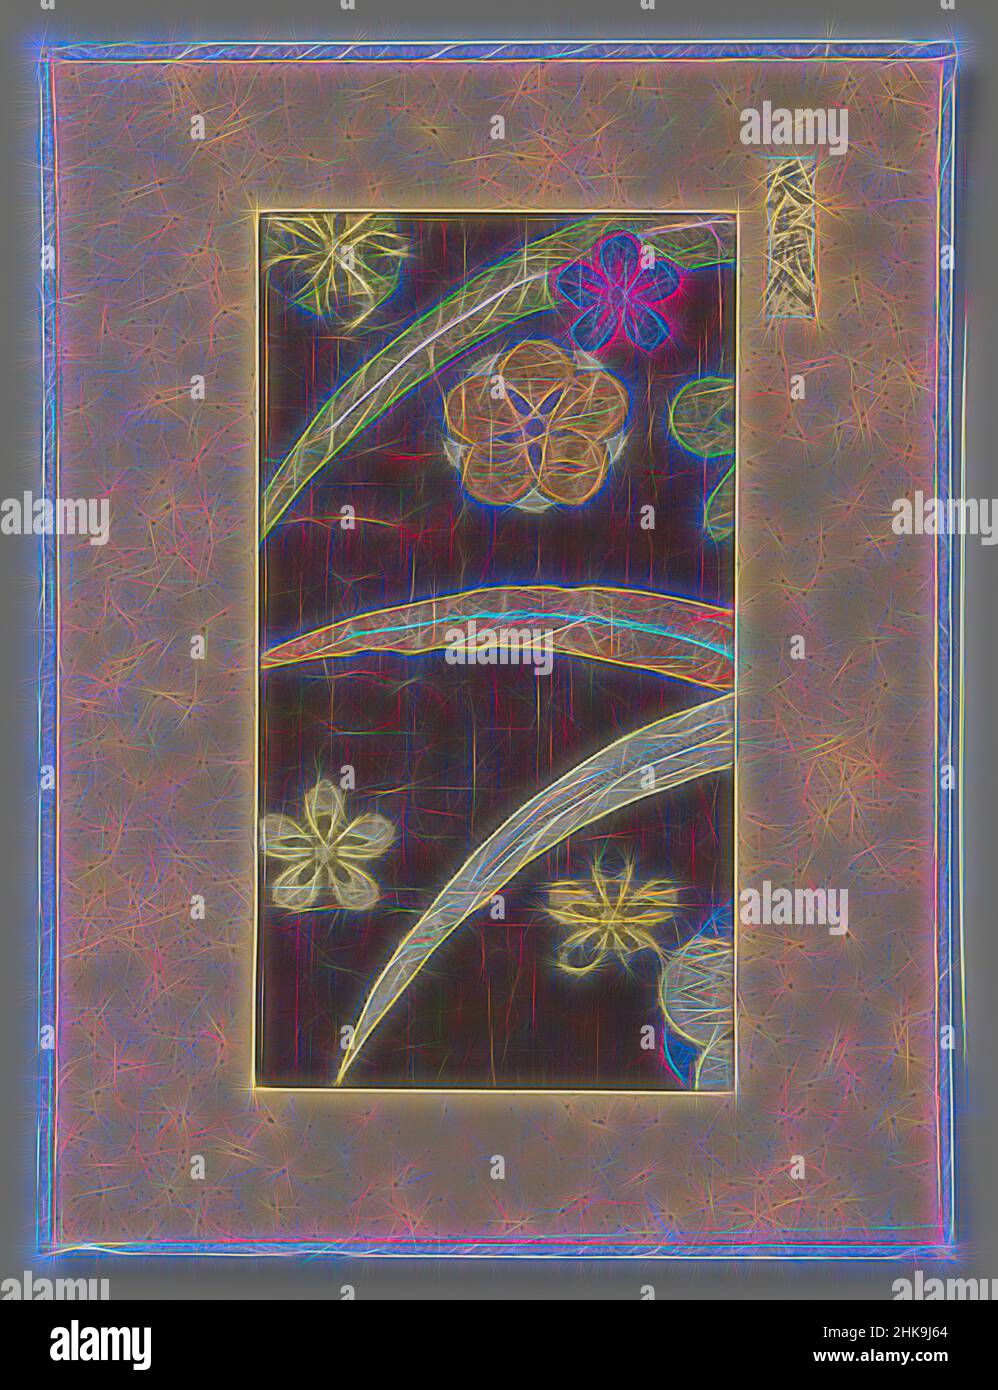 Inspiriert von Textilfragment, Textilfragment, Stickerei von Blumen und Blättern auf violettem Seidenfond., Japan, 1573 - 1591, Seide, Höhe 24,7 cm × Breite 13,5 cm, neu erfunden von Artotop. Klassische Kunst neu erfunden mit einem modernen Twist. Design von warmen fröhlichen Leuchten der Helligkeit und Lichtstrahl Strahlkraft. Fotografie inspiriert von Surrealismus und Futurismus, umarmt dynamische Energie der modernen Technologie, Bewegung, Geschwindigkeit und Kultur zu revolutionieren Stockfoto